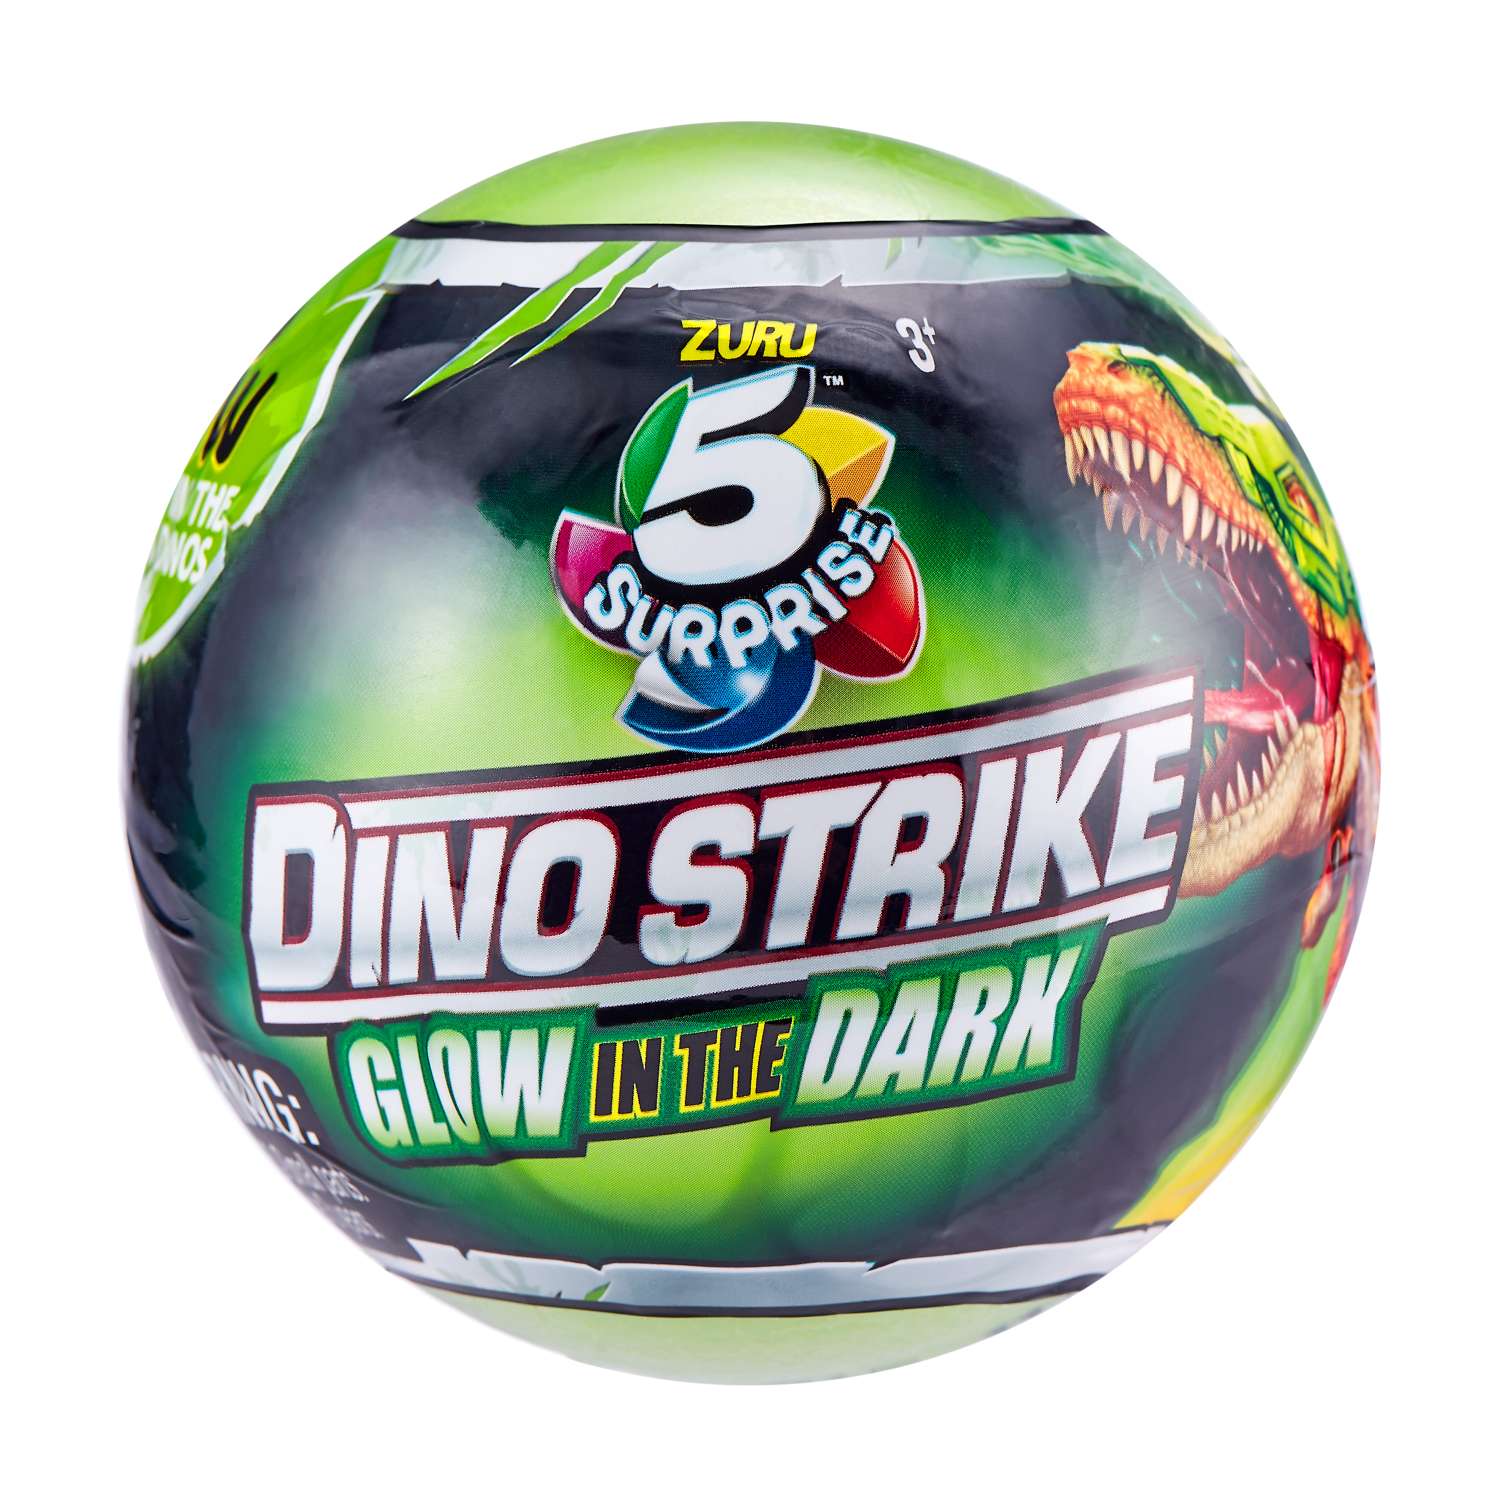 Игрушка Zuru Dino strike 2 в непрозрачной упаковке (Сюрприз) 7769SQ1 - фото 1